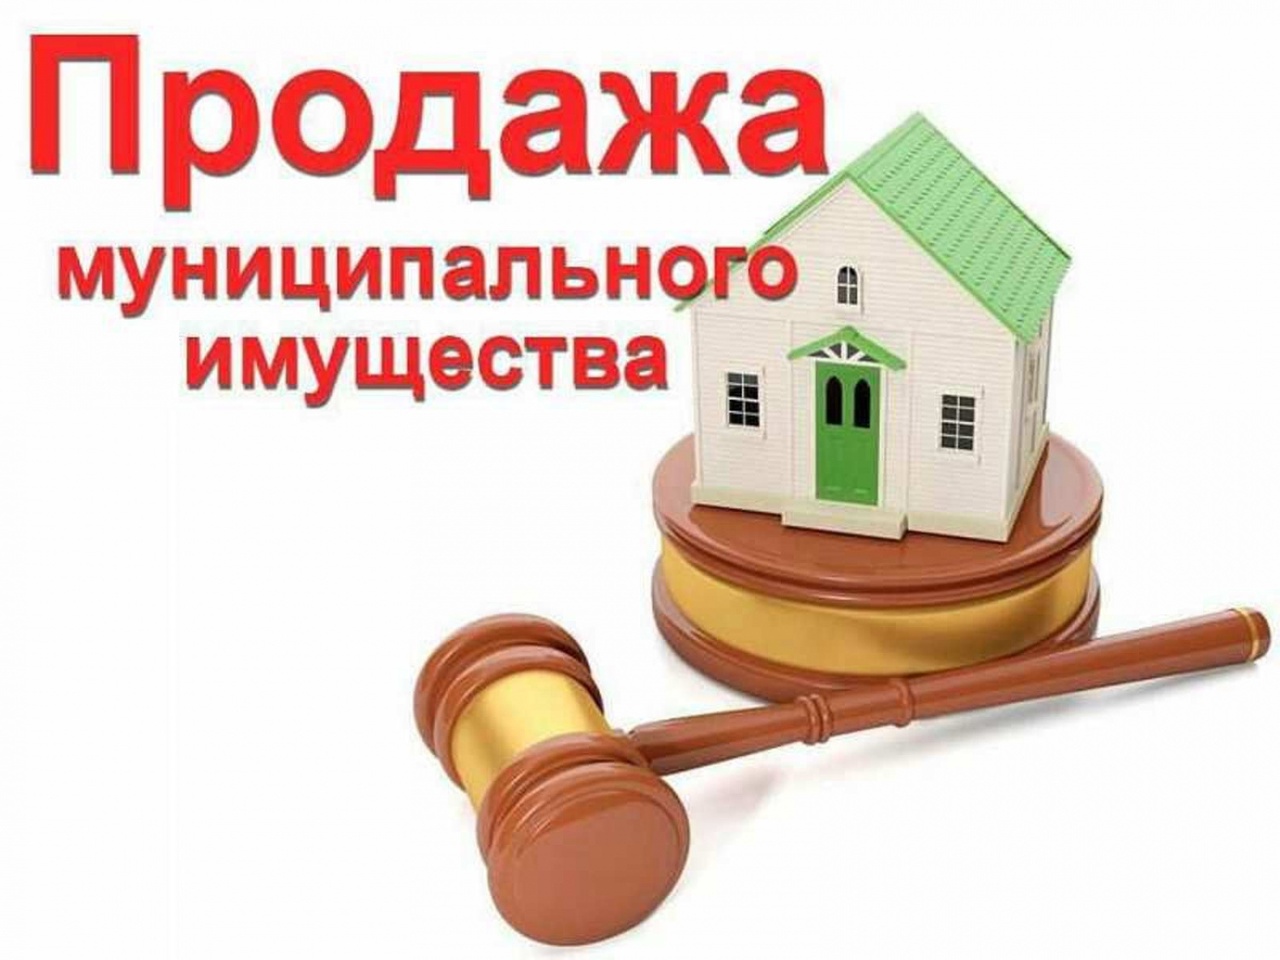 Комитет по управлению имуществом города Димитровграда (организатор торгов) сообщает о проведении аукциона по продаже муниципального имущества⚡.